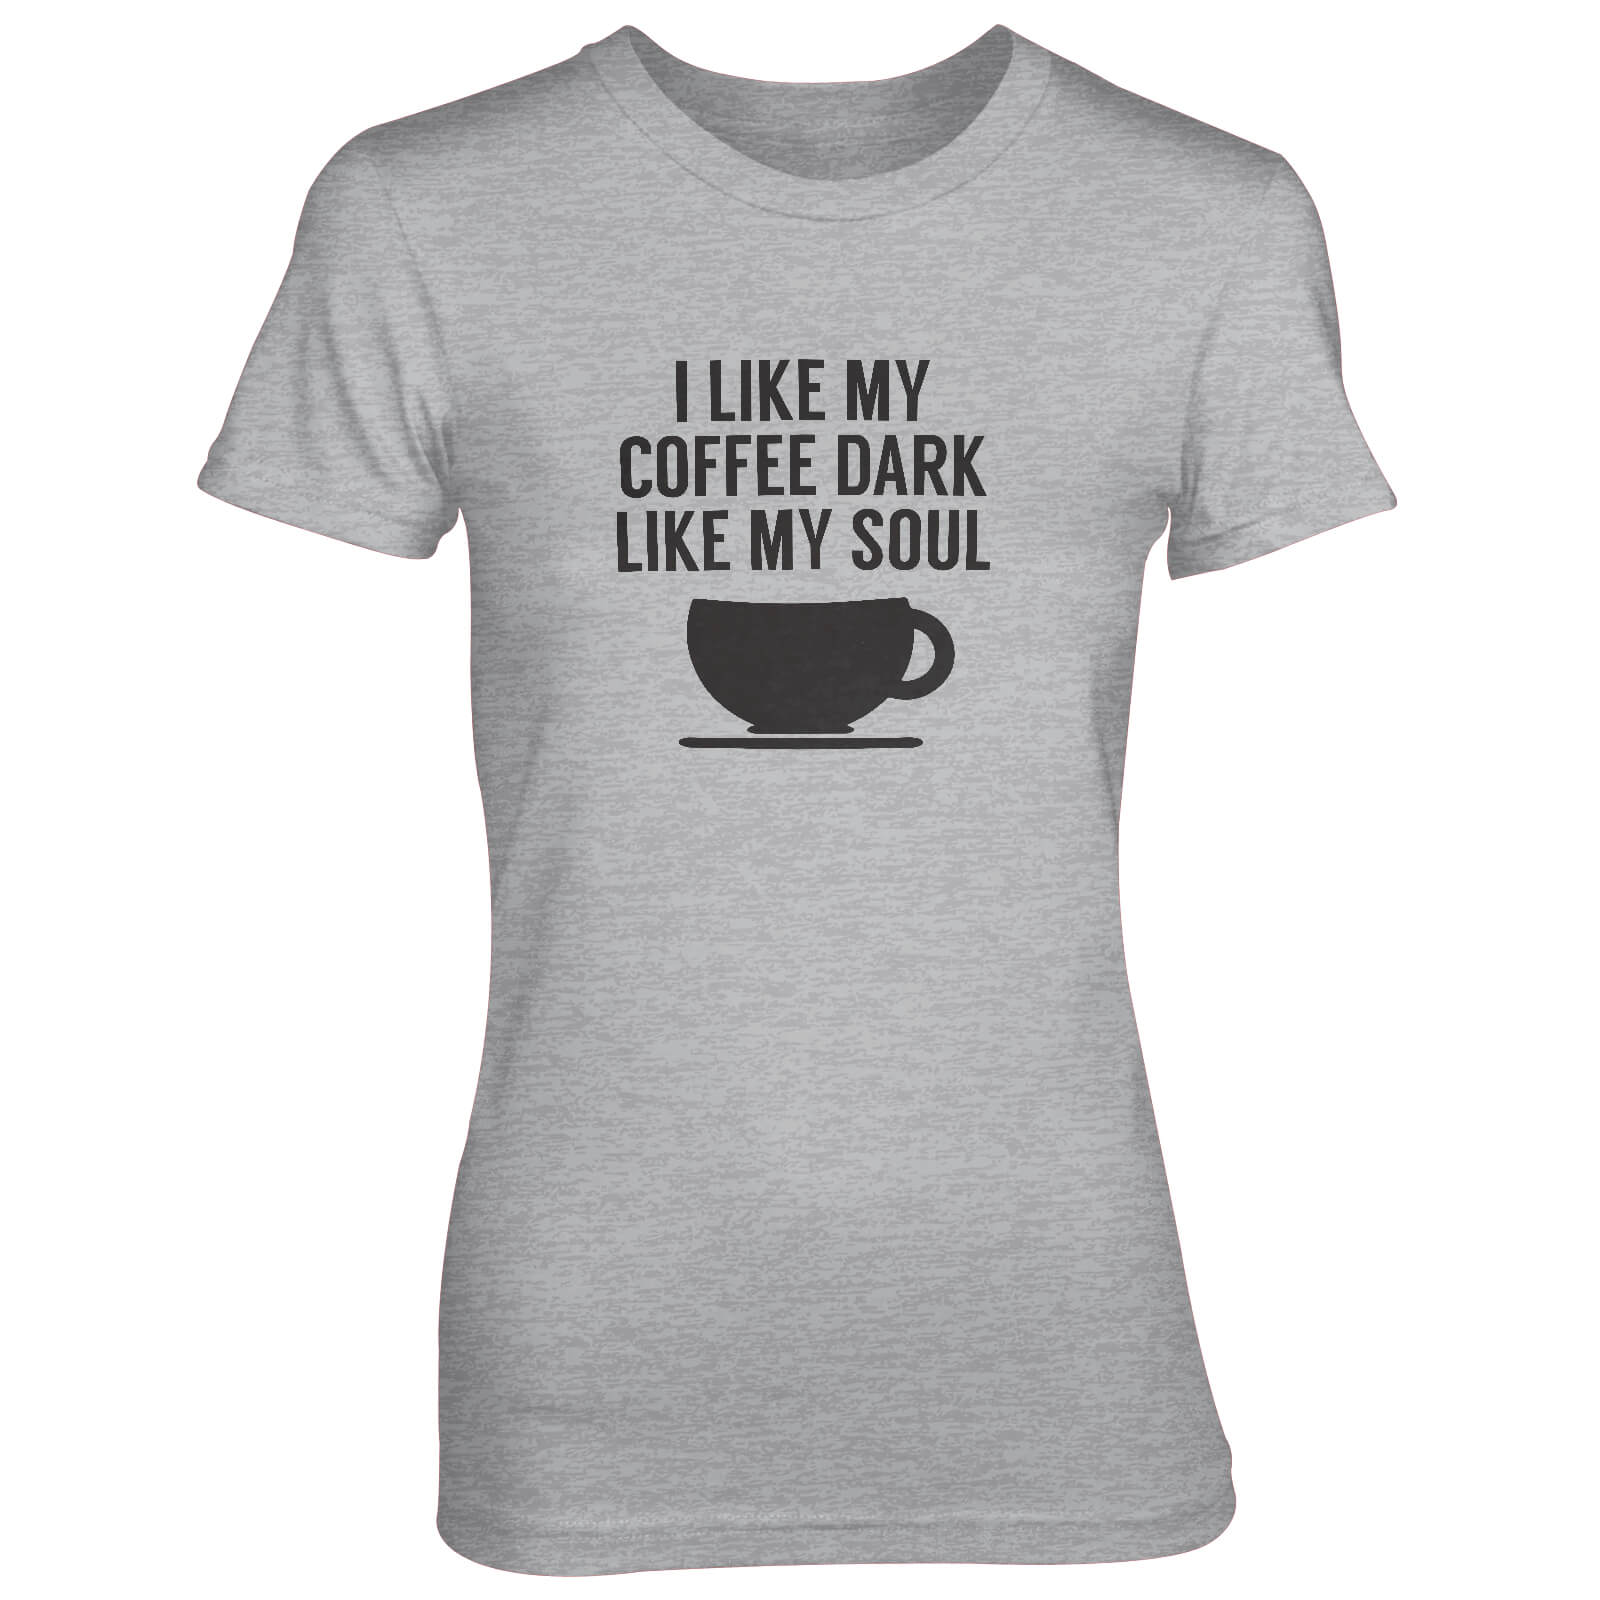 I Like My Coffee Dark Like My Soul Women's Grey T-Shirt - S - Grey